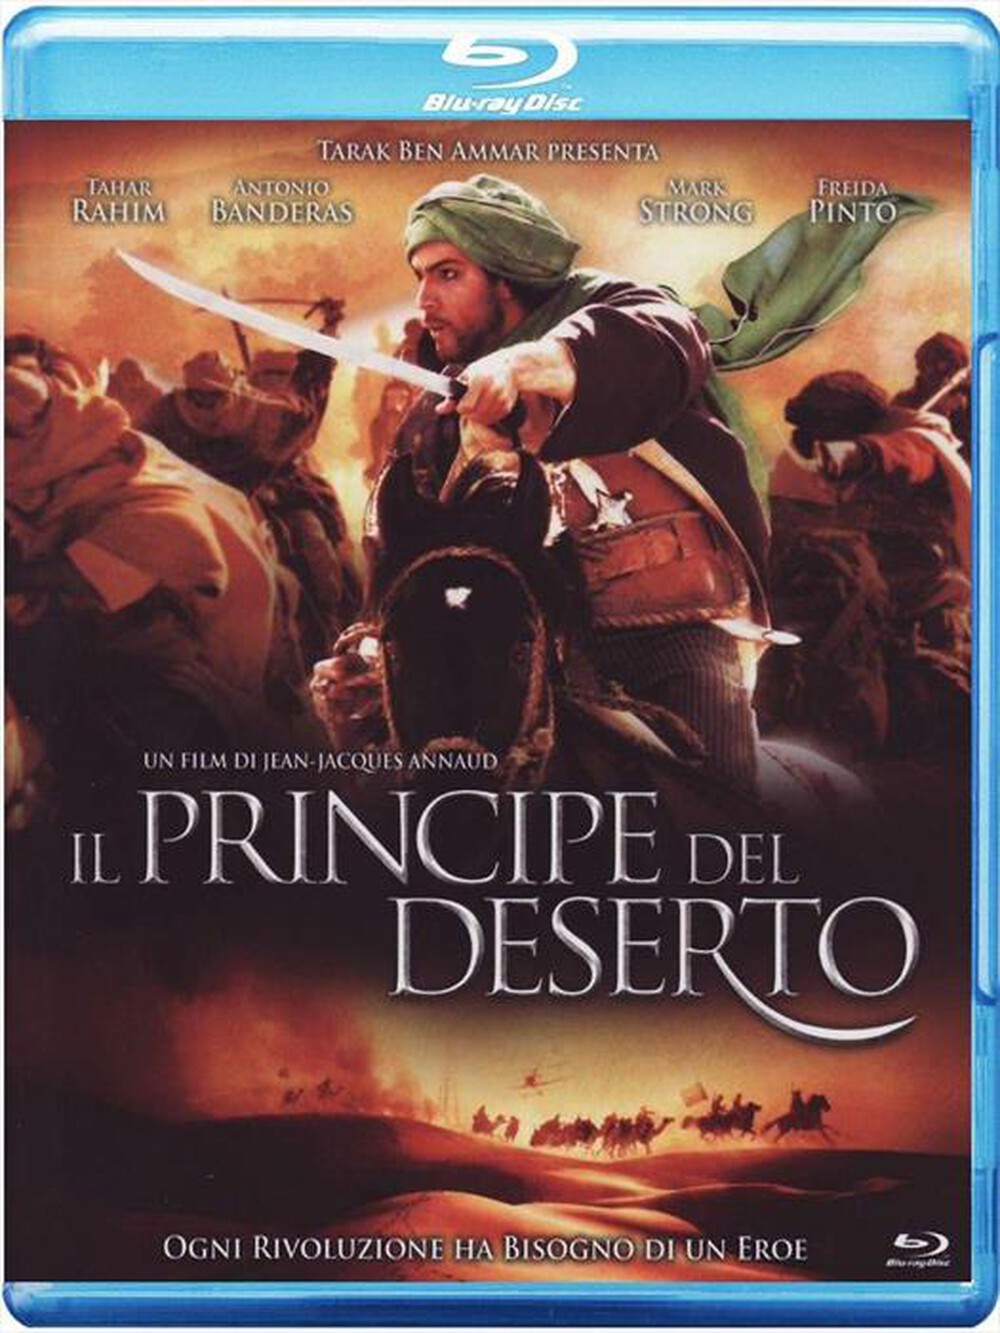 "EAGLE PICTURES - Principe Del Deserto (Il) (SE) (Blu-Ray+Copia Di"